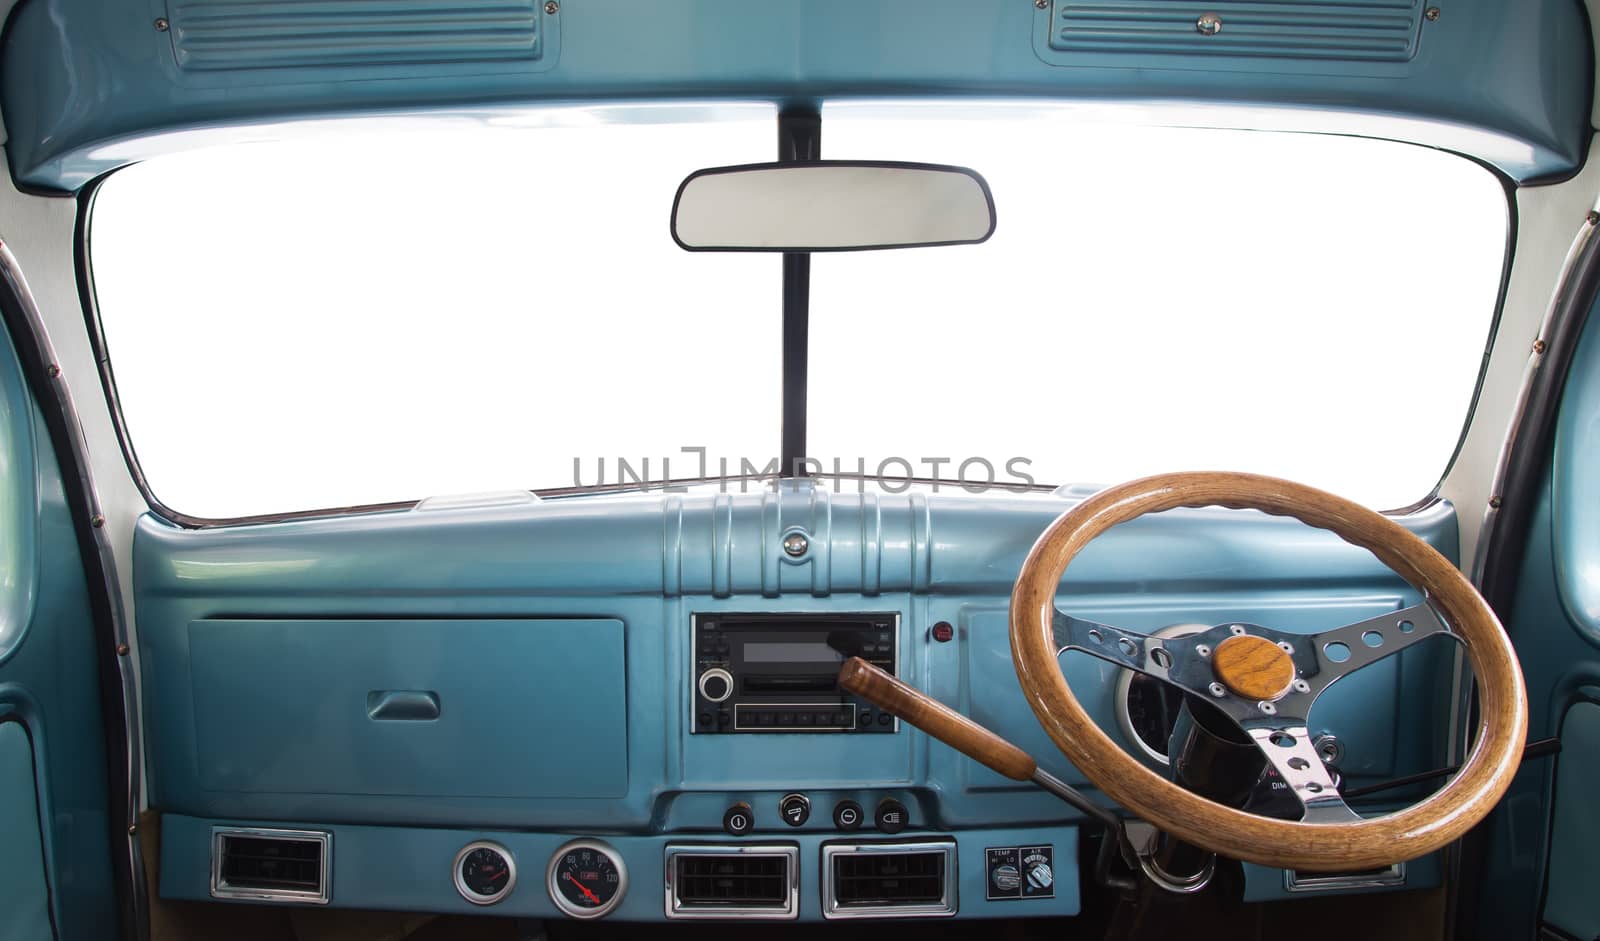 View of the interior of a retro car